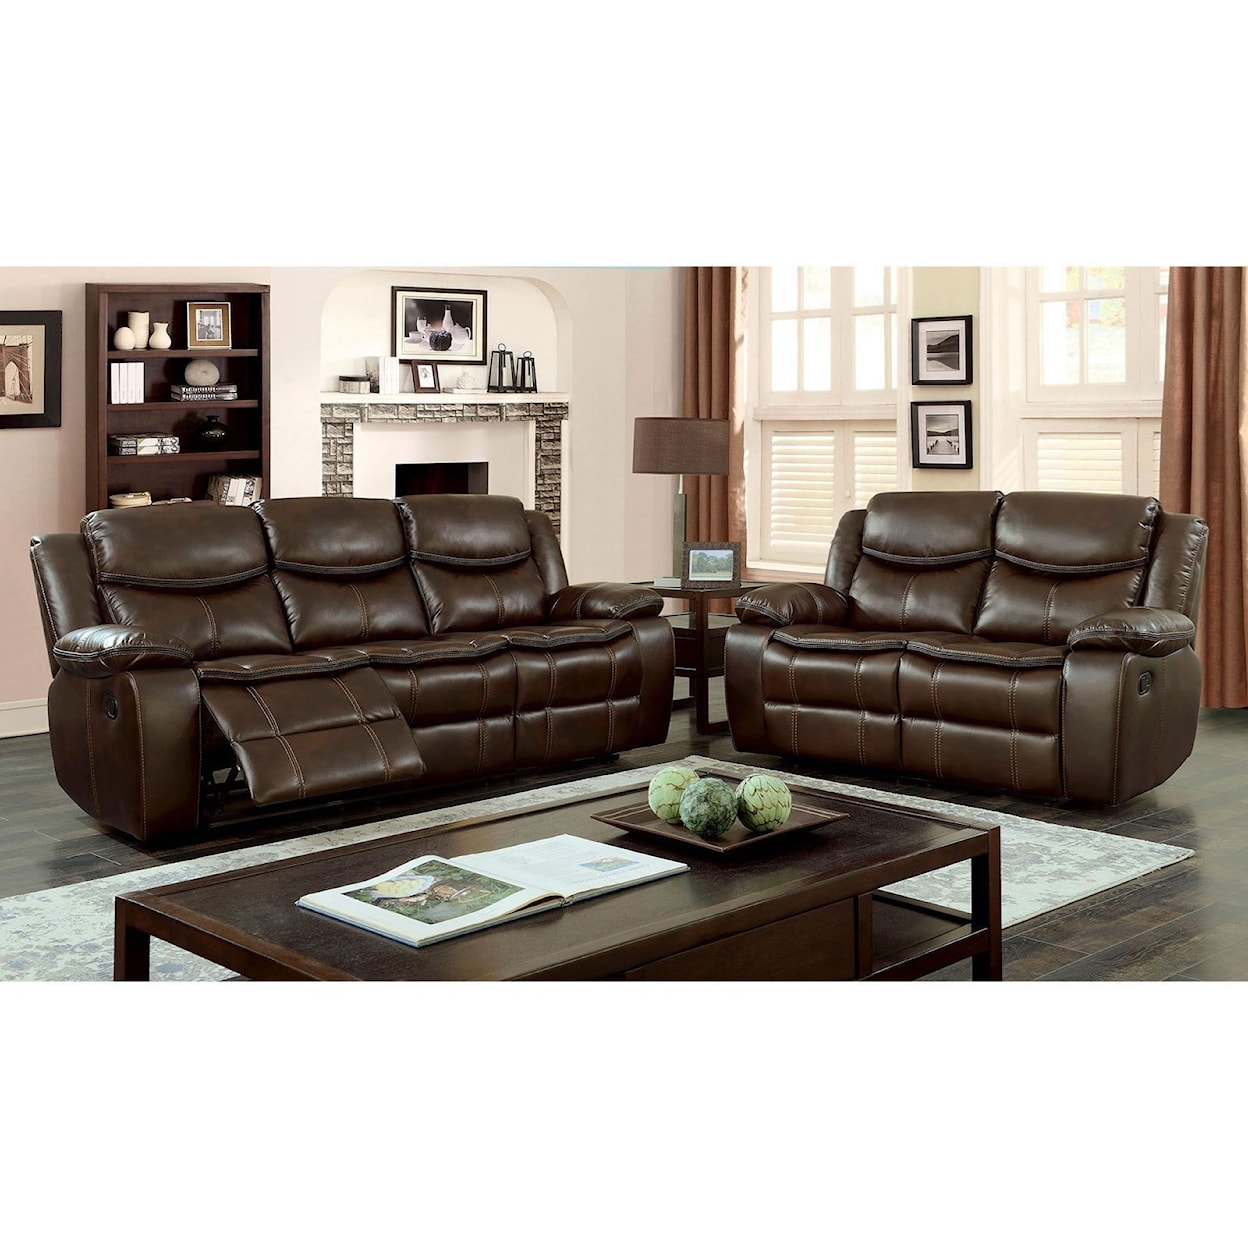 Furniture of America Pollux Sofa w/ 2 Recliners